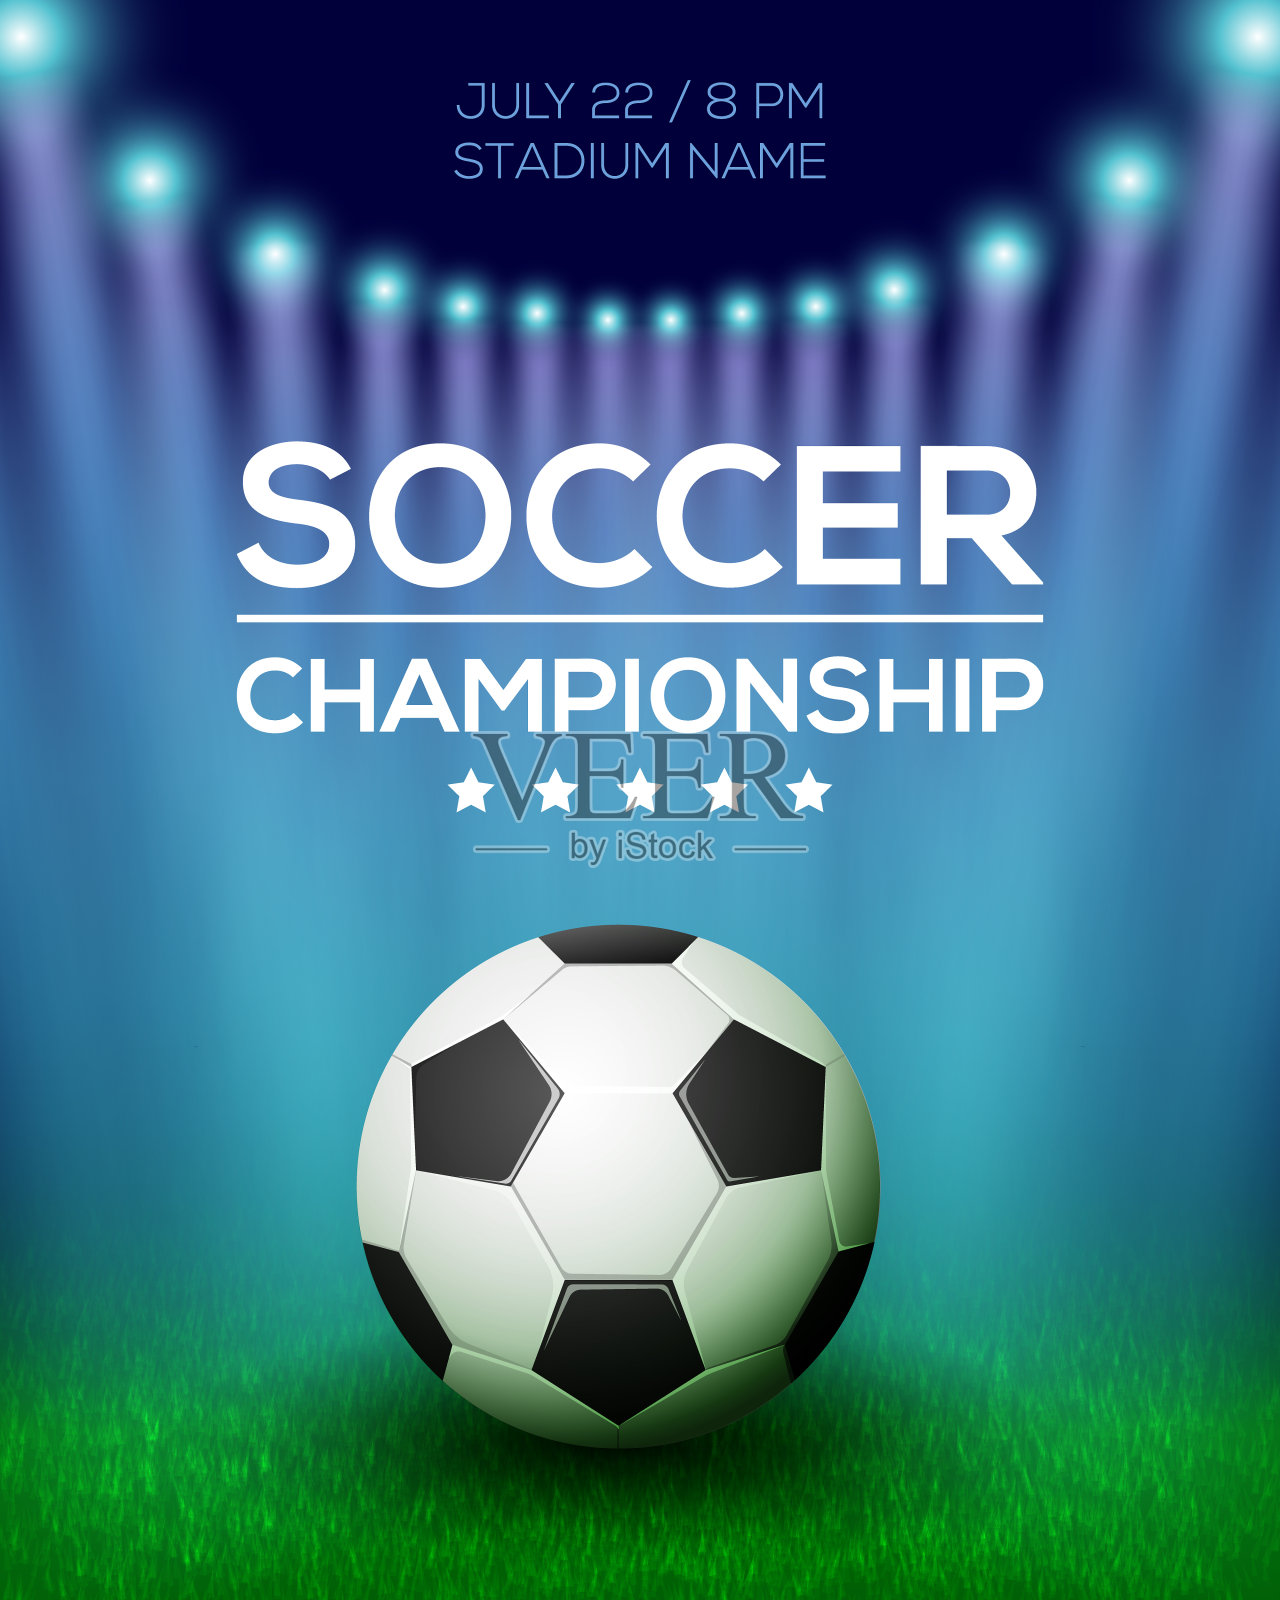 足球锦标赛海报设计设计模板素材